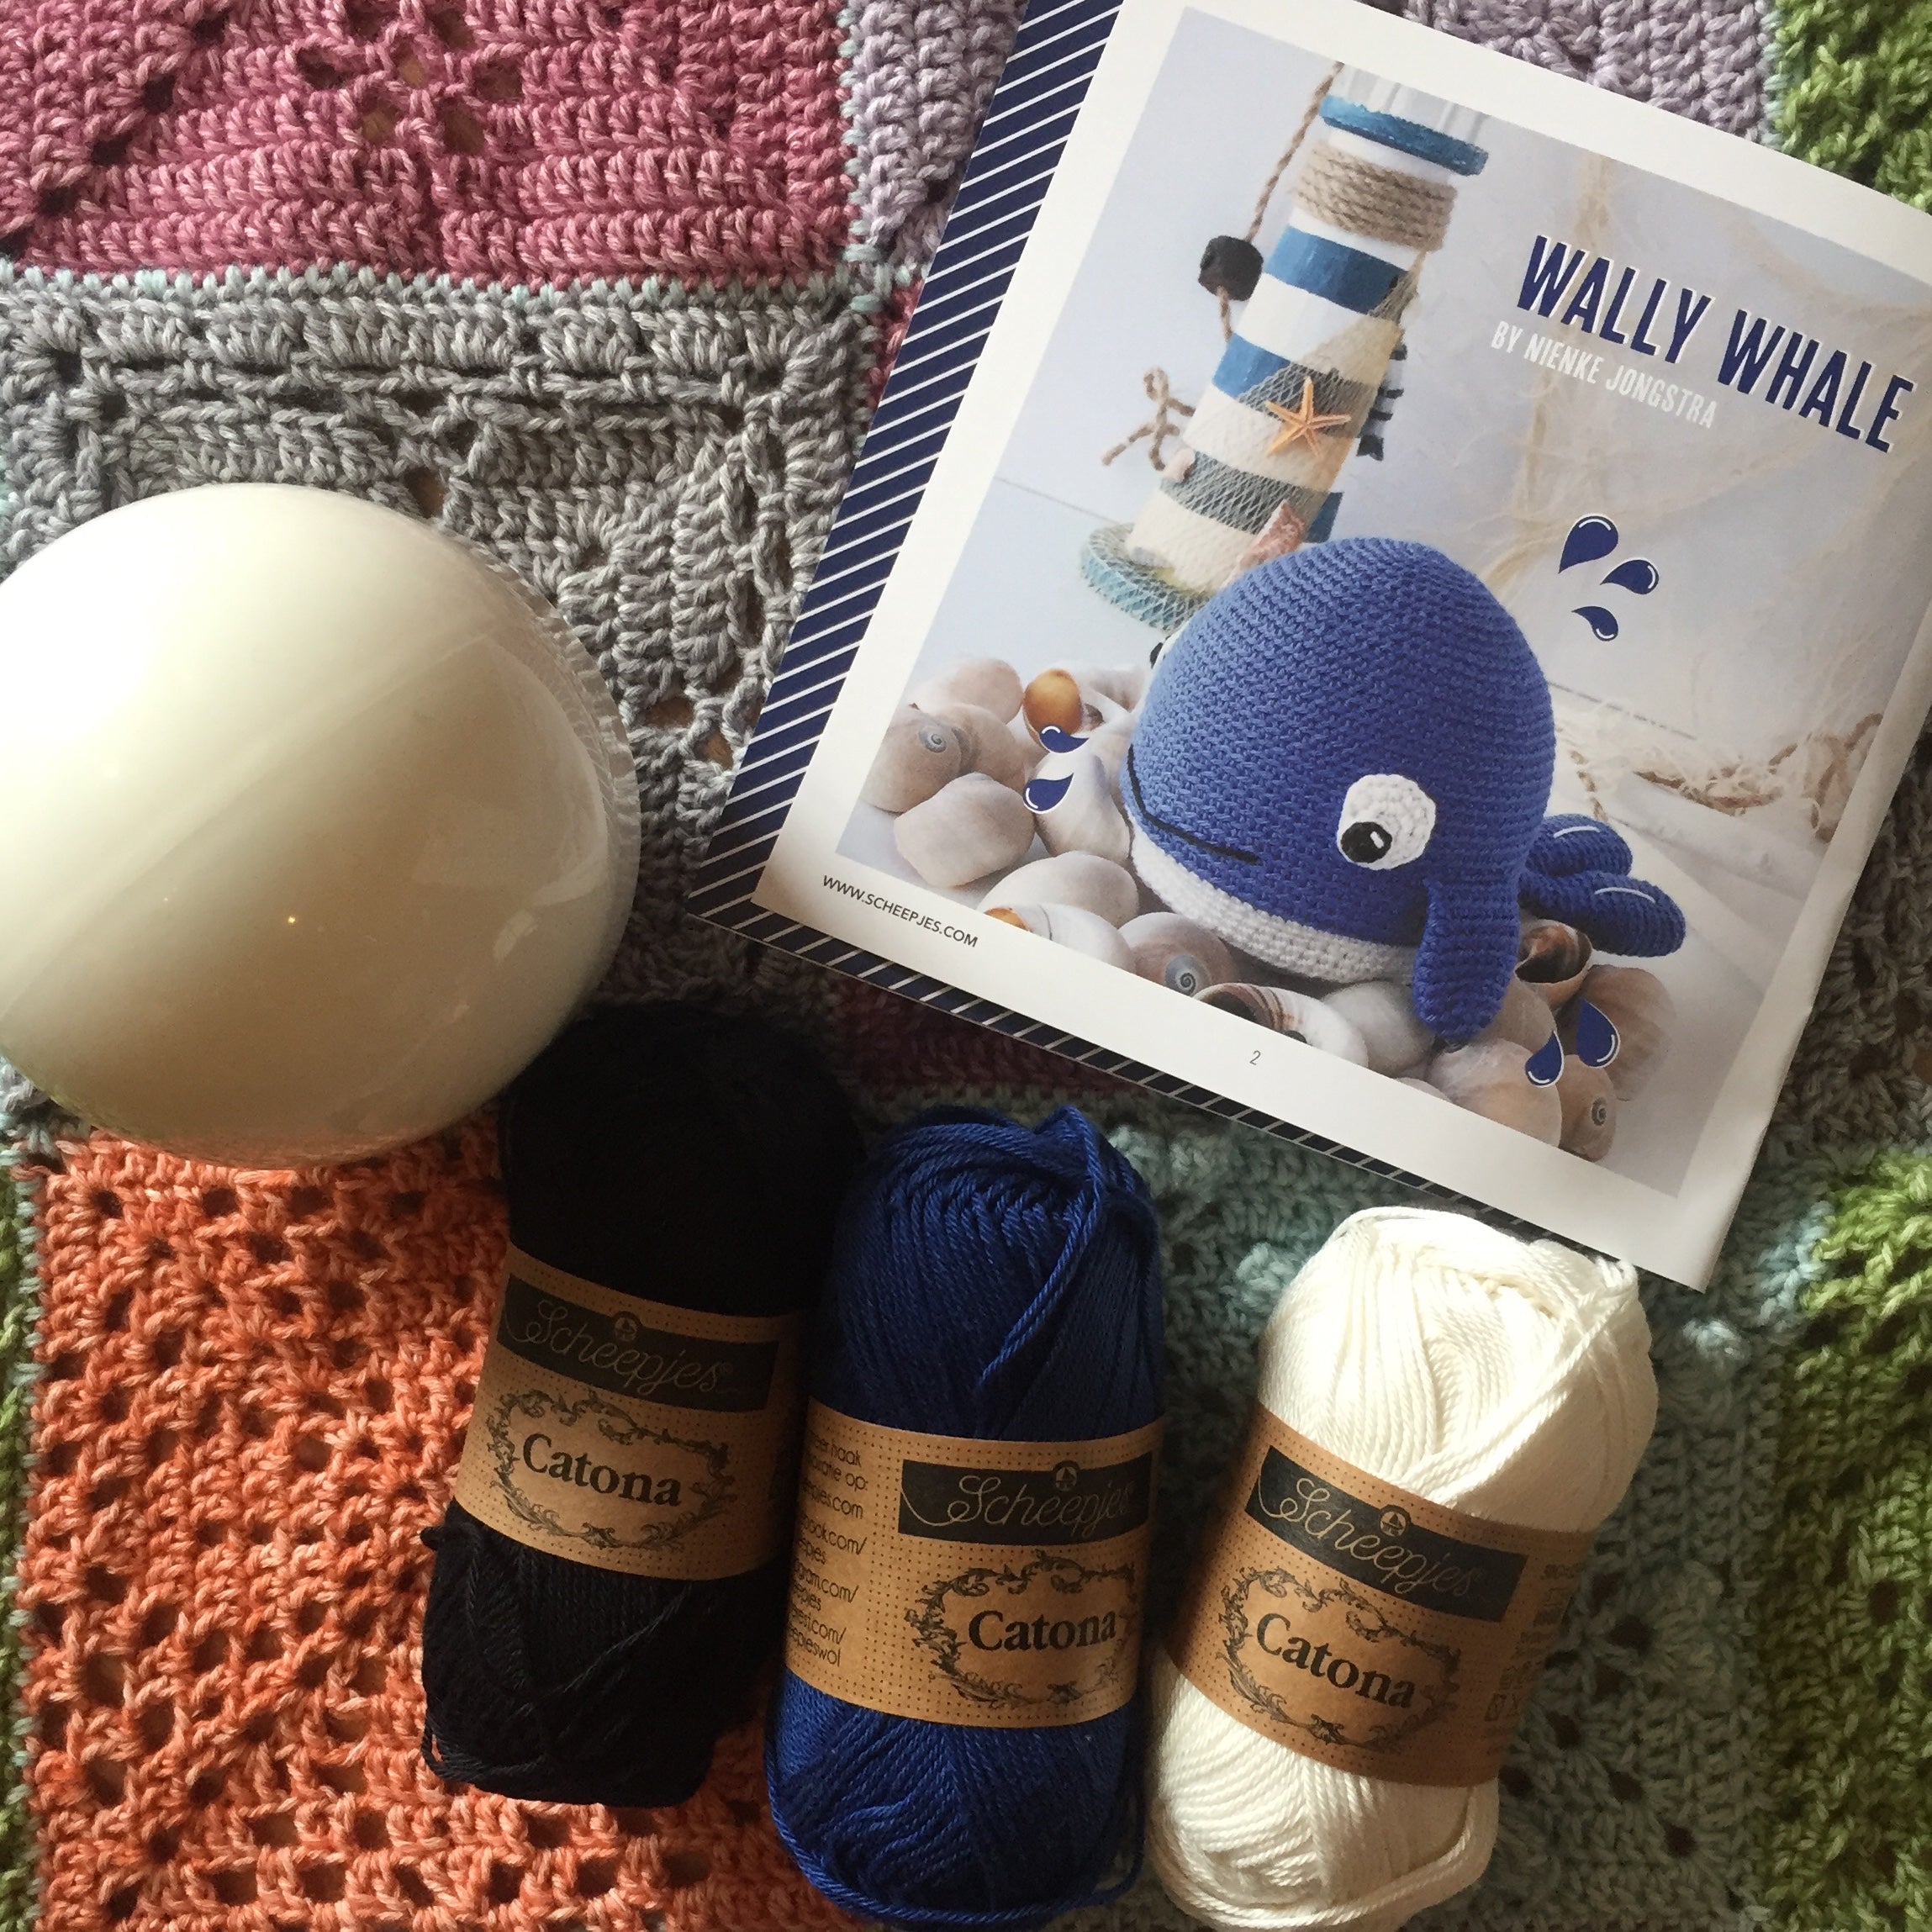 Scheepjes Wally Whale - Complete Crochet Kit